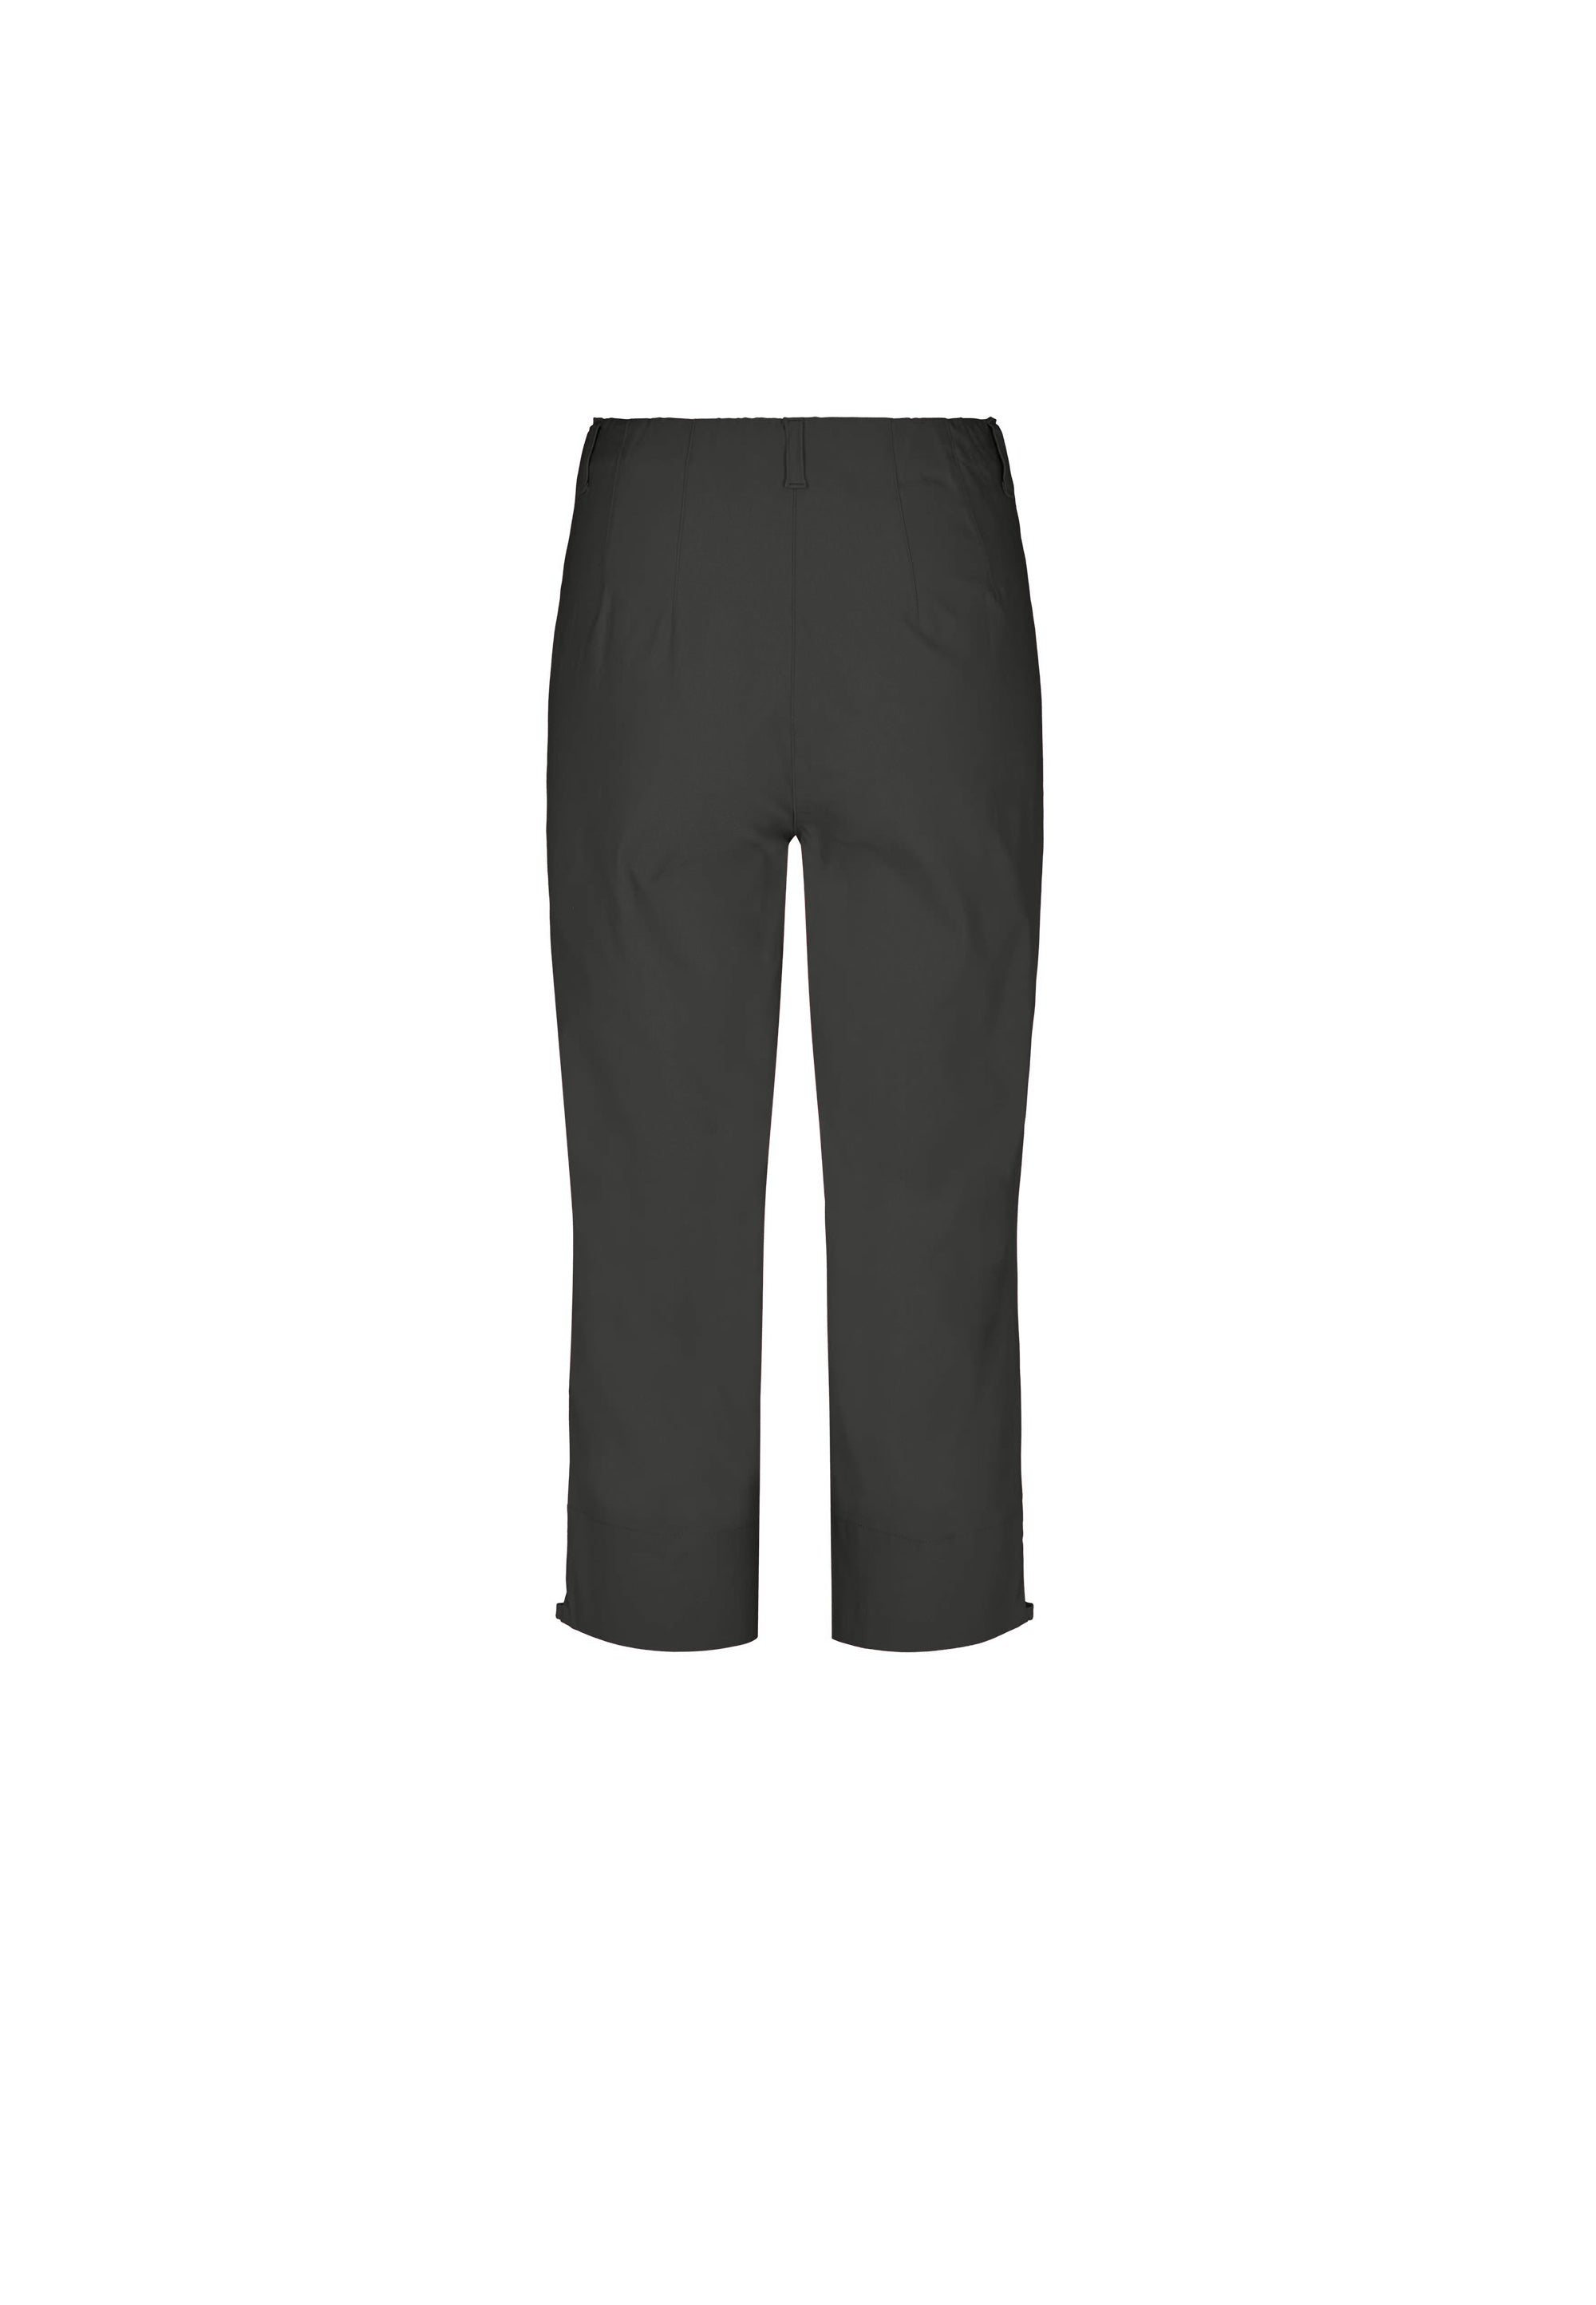 LAURIE  Anabelle Regular Capri ML Trousers REGULAR 99970 Black